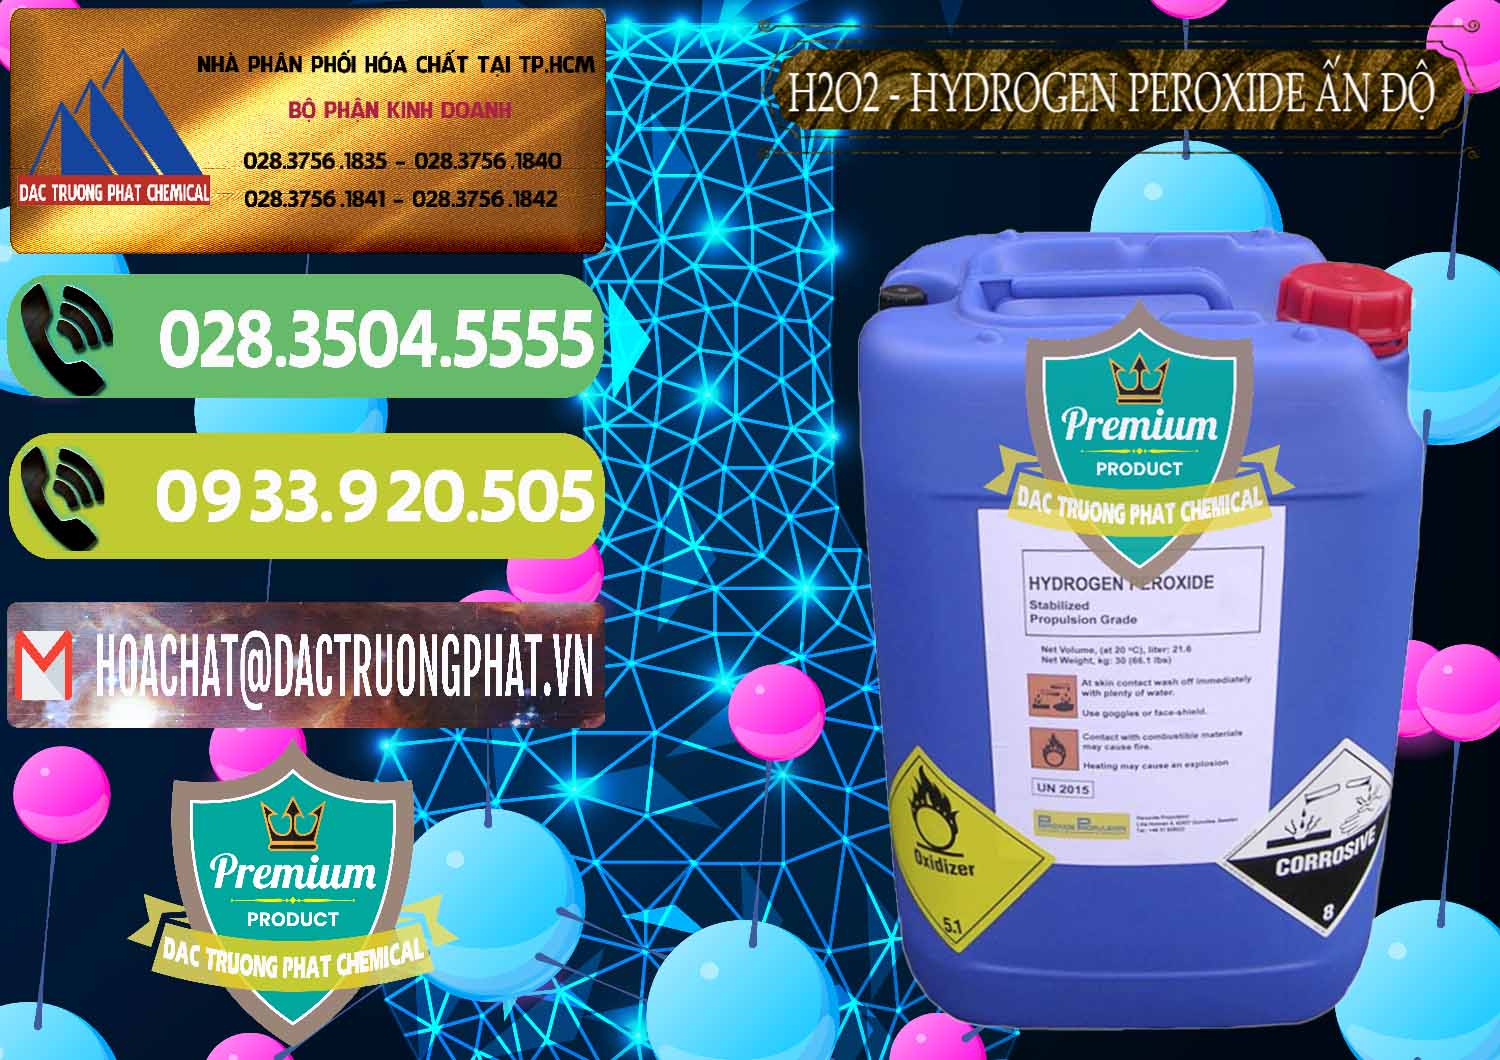 Đơn vị chuyên kinh doanh & bán H2O2 - Hydrogen Peroxide 50% Ấn Độ India - 0349 - Cty chuyên bán - cung cấp hóa chất tại TP.HCM - hoachatmientay.vn